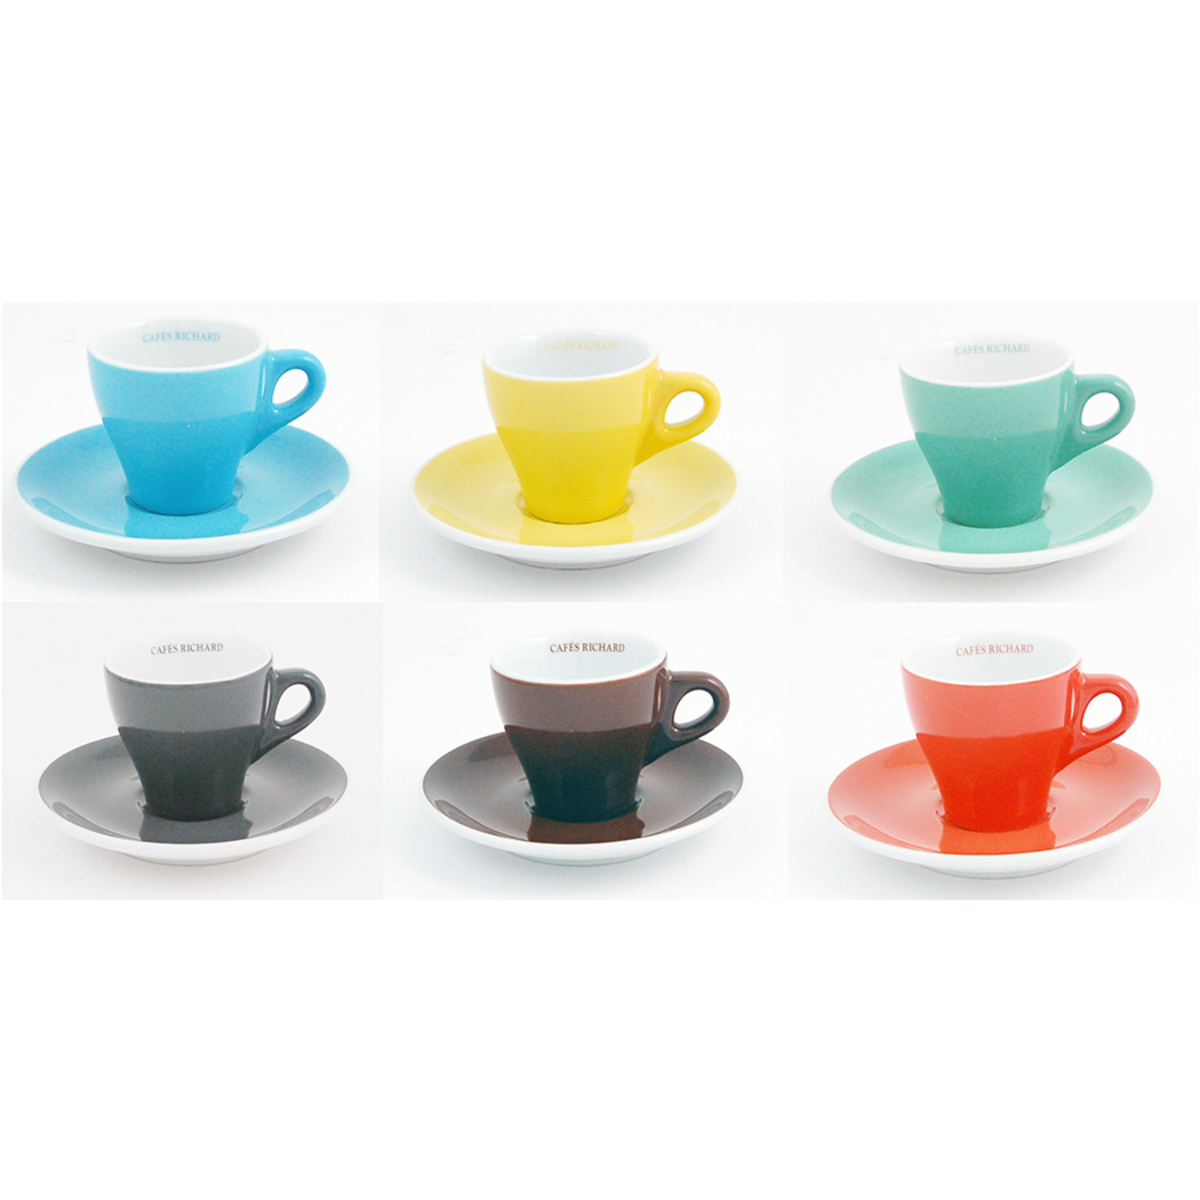 Set de 6 tasses et soucoupes expresso couleurs assorties de Cafés Richard